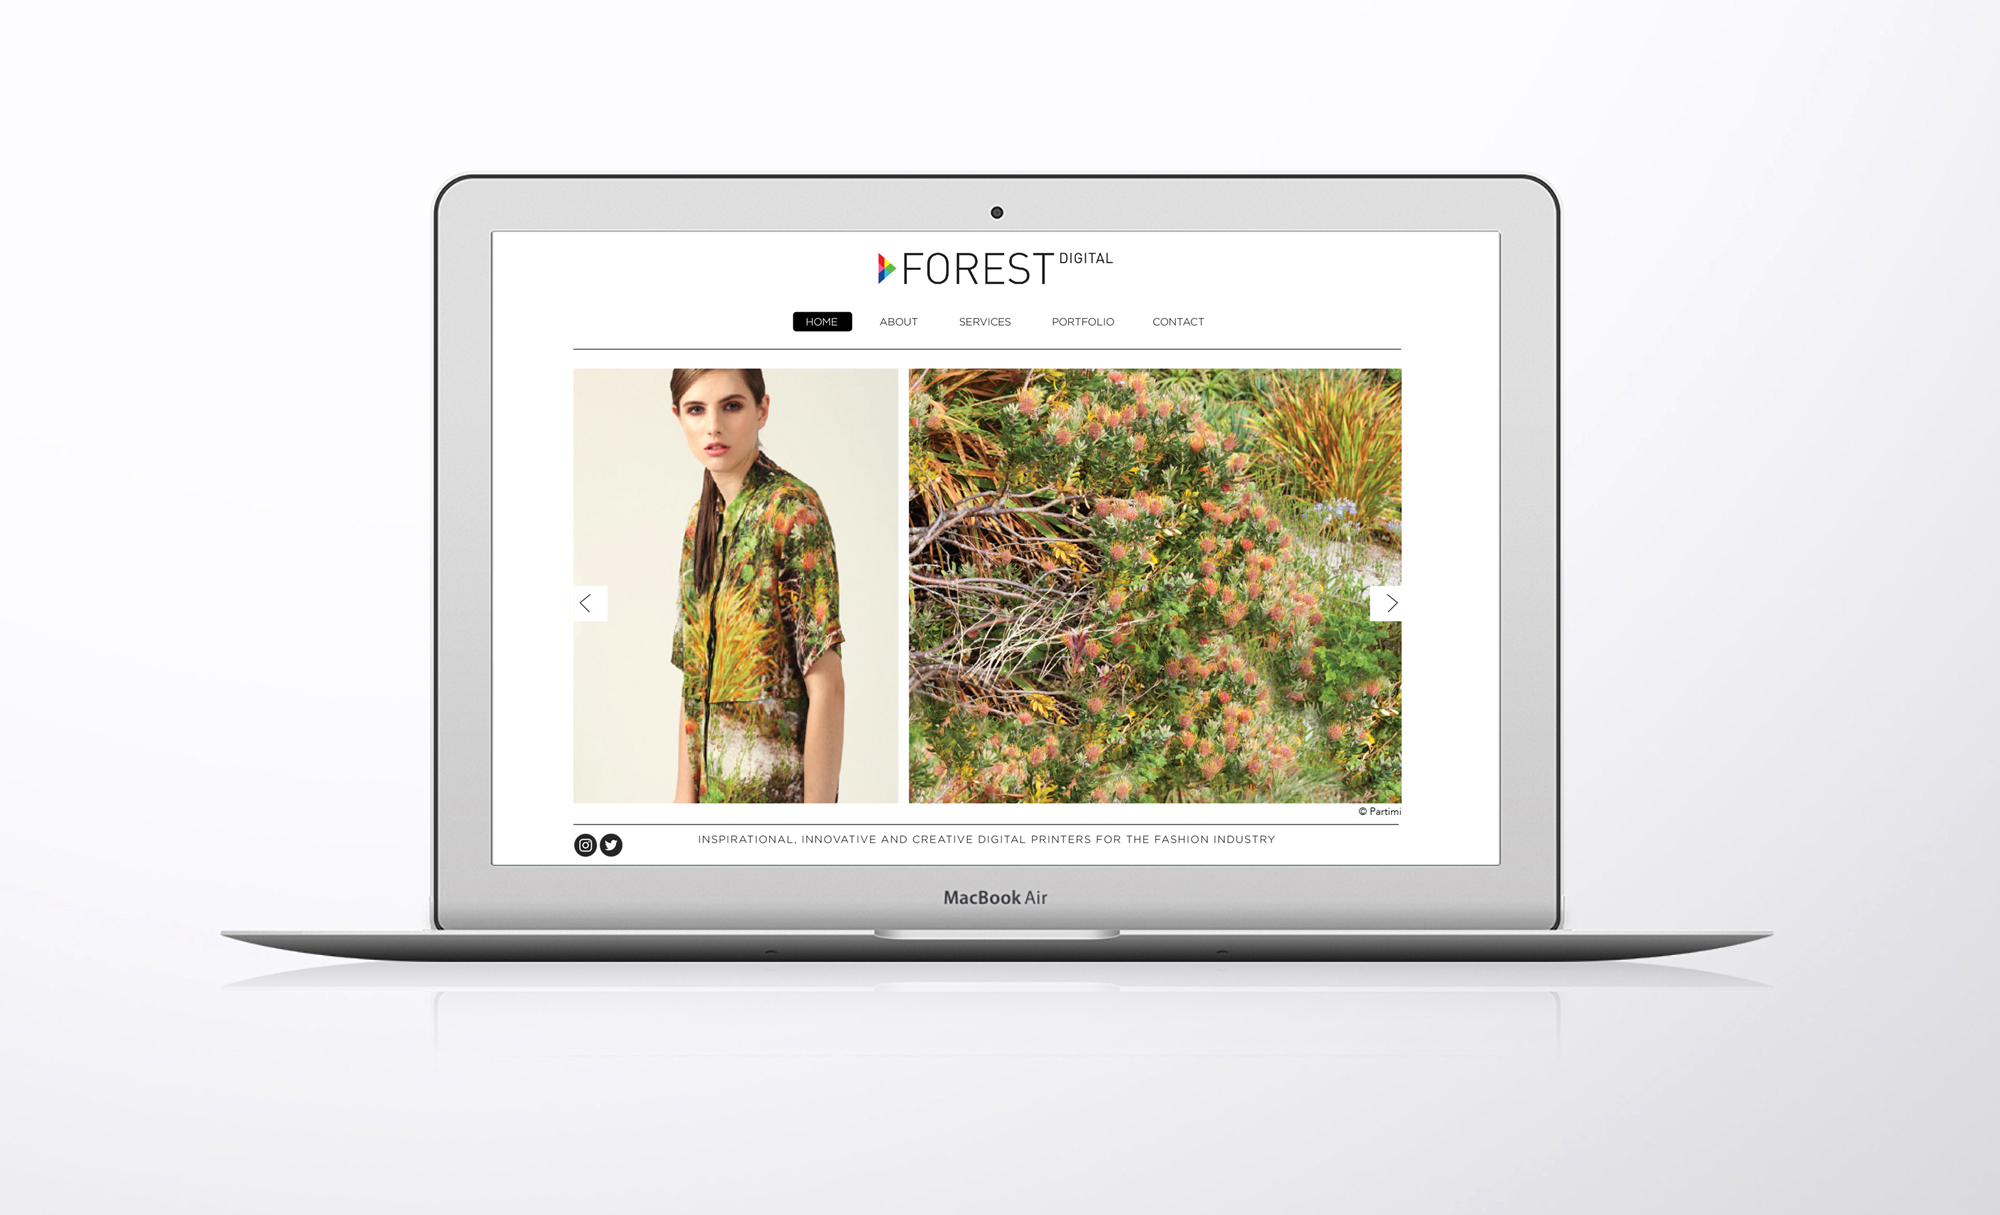 Forest Digital website